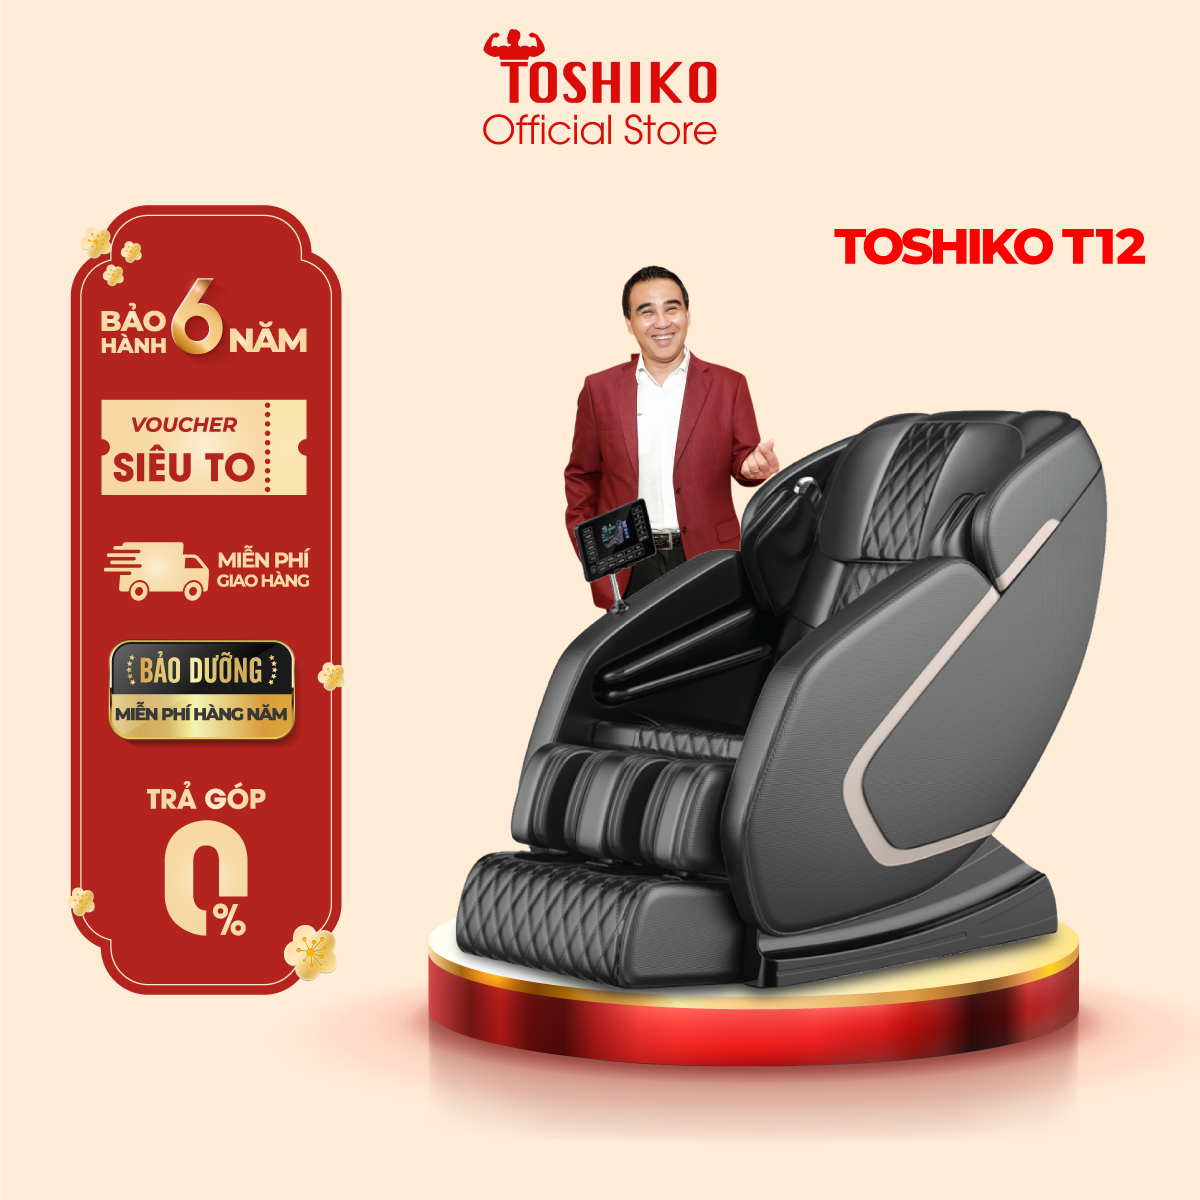 [TRẢ GÓP 0%] [Quà tặng trị giá 1,3TR]Ghế massage toàn thân Toshiko T12 - Ghế Matxa Trị Liệu Toàn Thân...